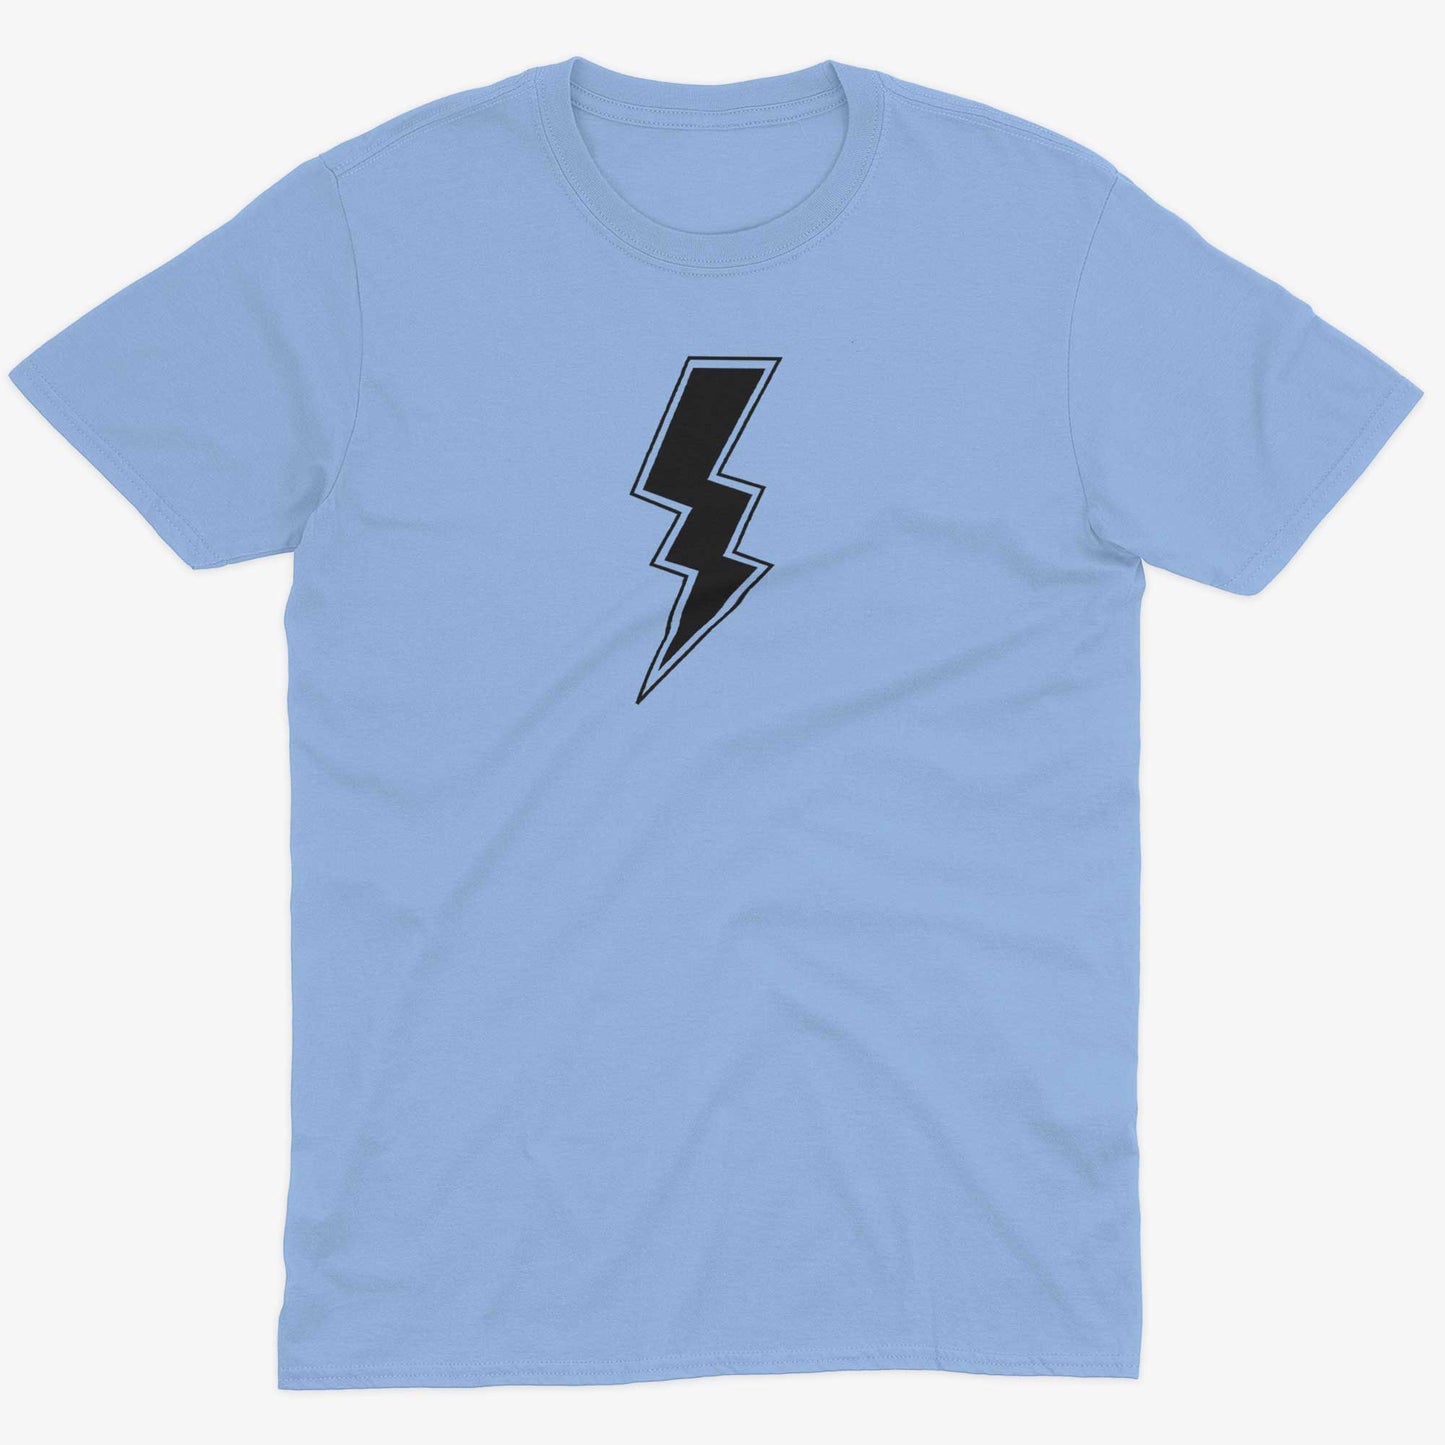 Giant Lightning Bolt Unisex Or Women's Cotton T-shirt-Baby Blue-Unisex